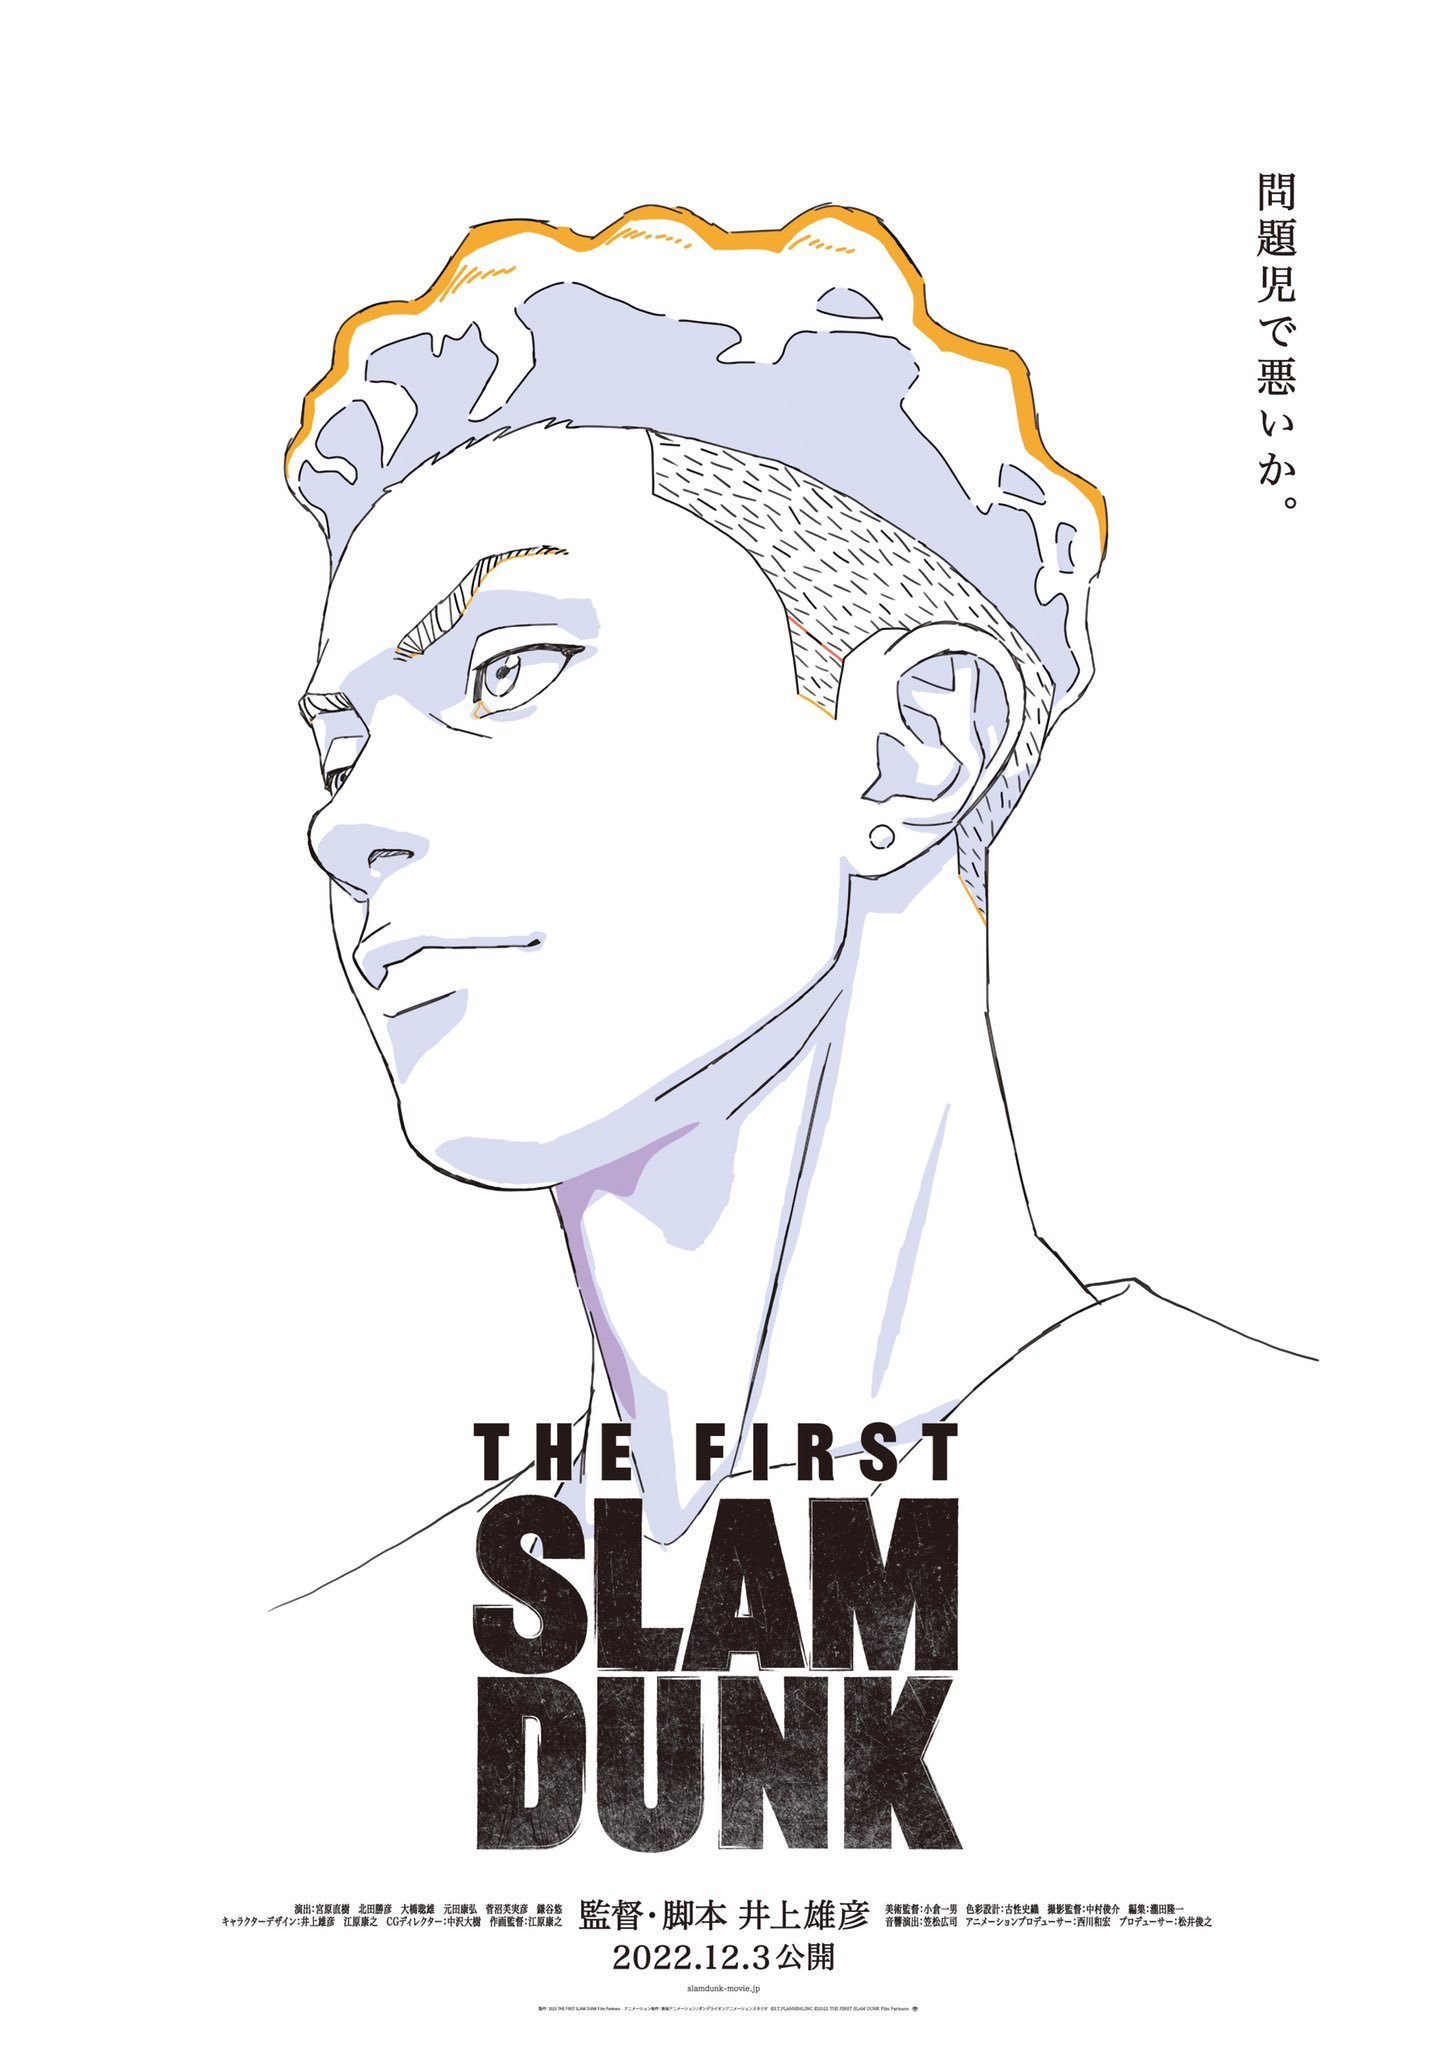 灌篮高手的新电影《THE FIRST SLAM DUNK》12月3日上映插图1